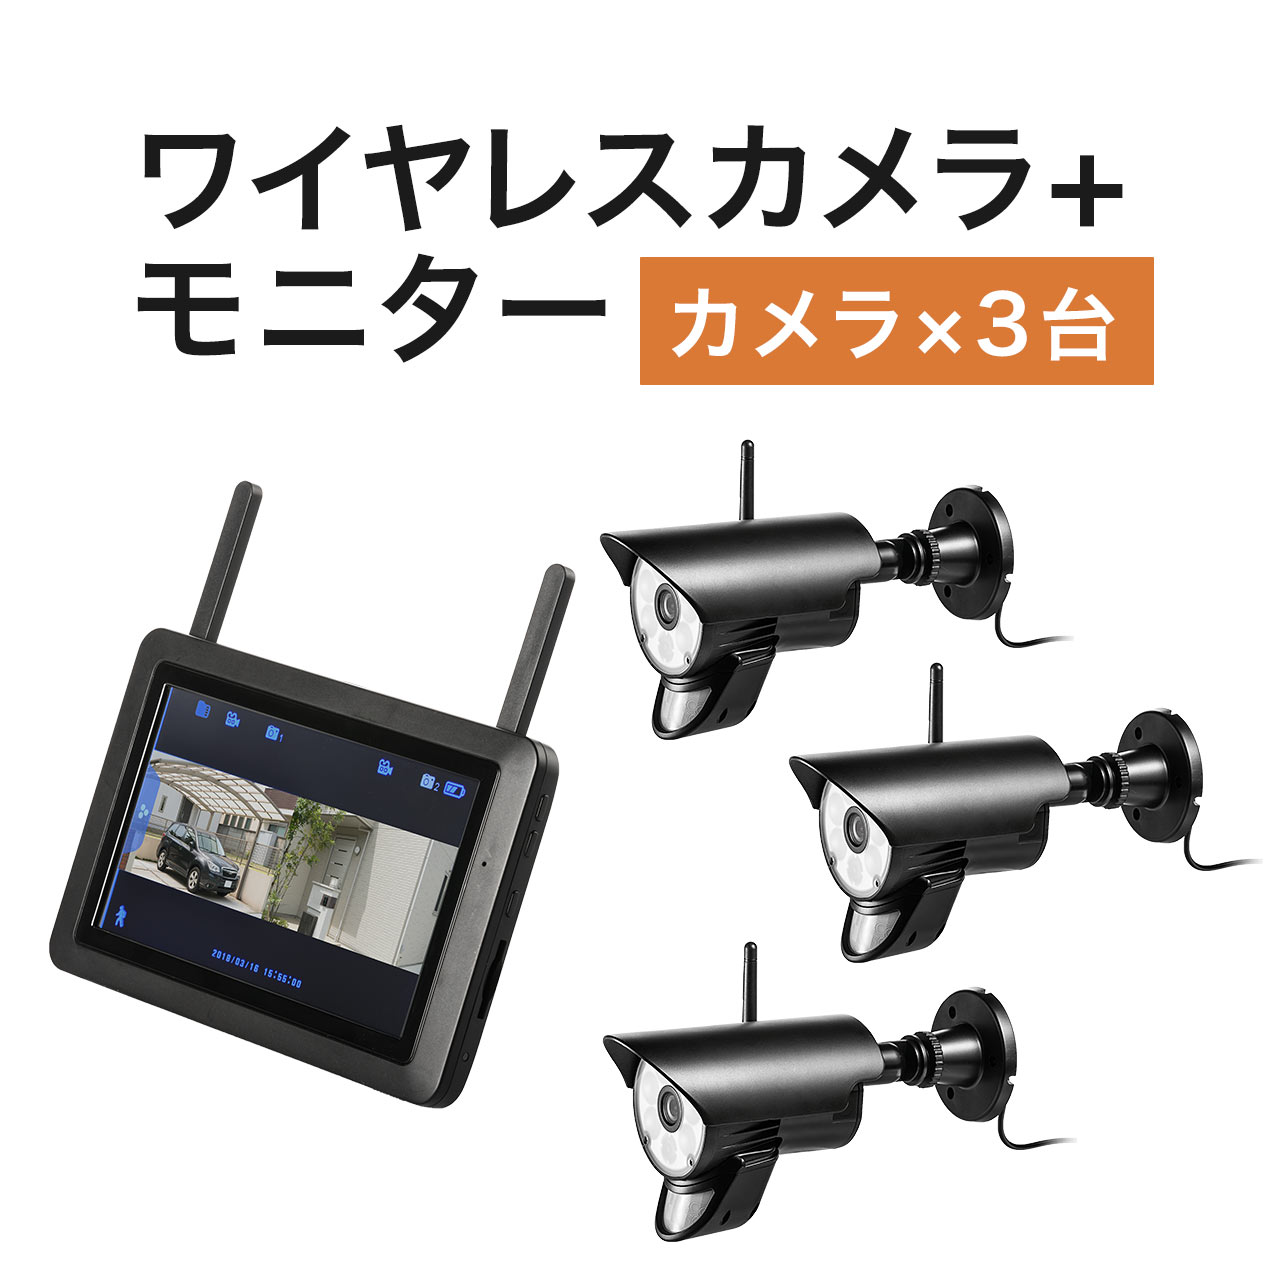 防犯カメラ ワイヤレスモニターセット 防水屋外対応カメラ ワイヤレスカメラ3台セット SDカード 録画対応